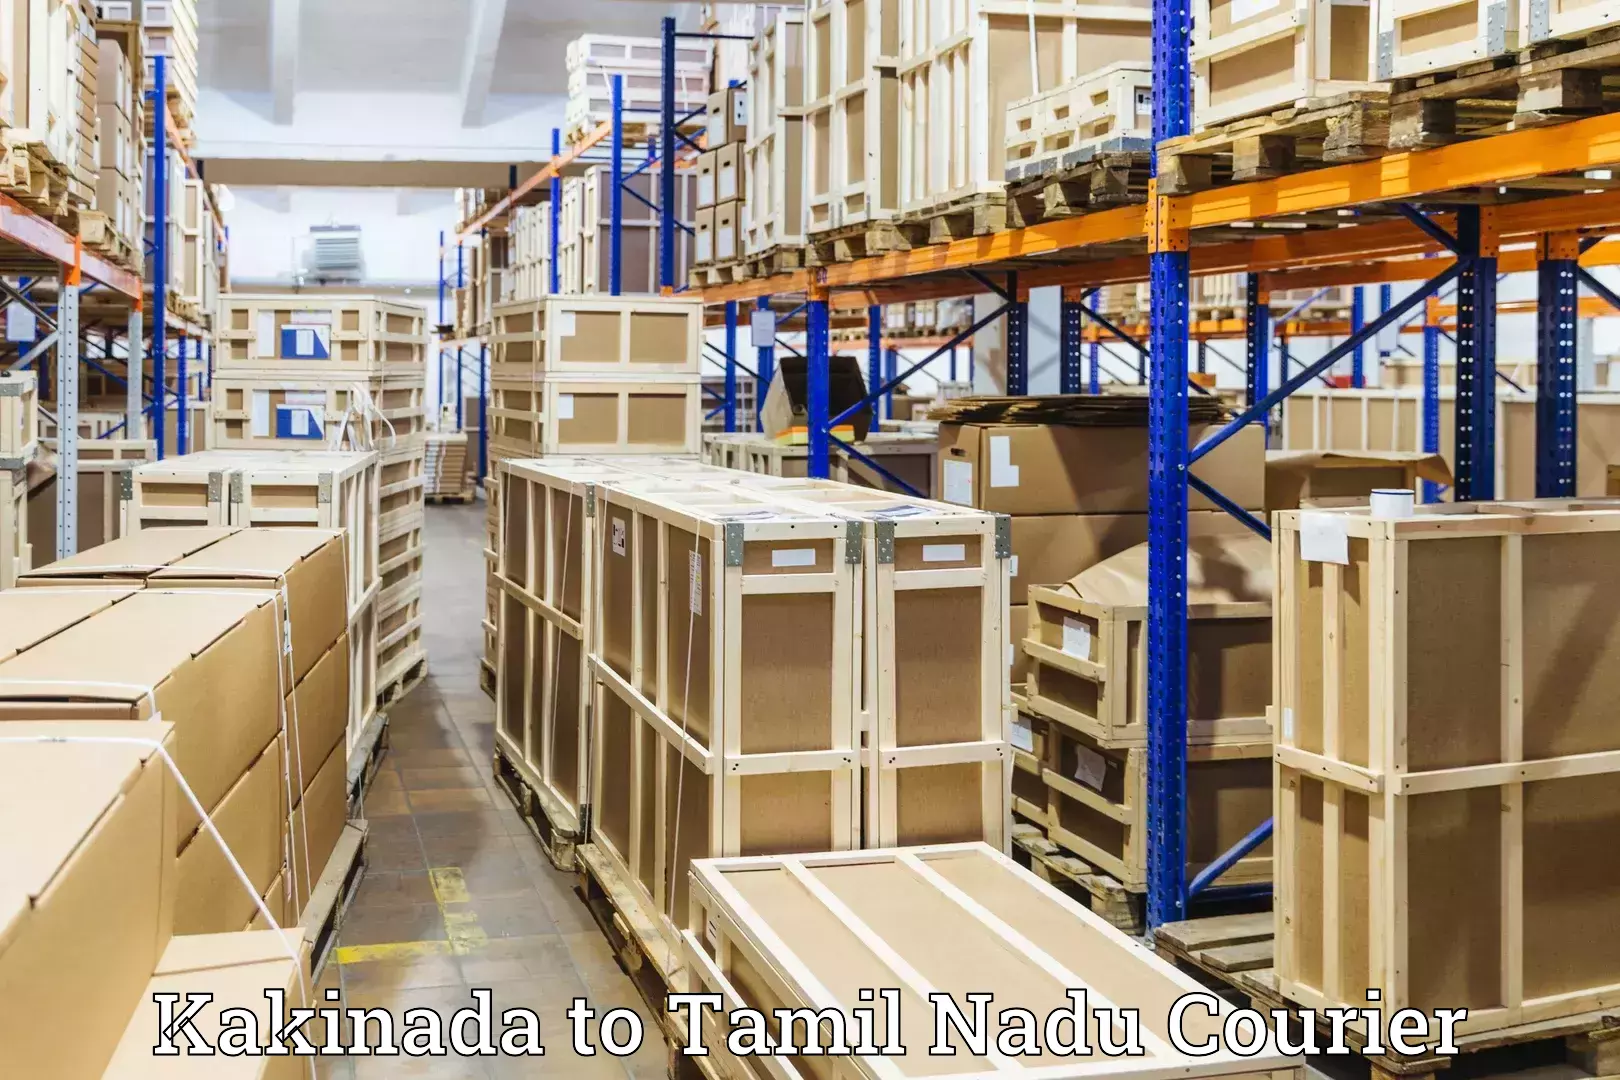 Baggage transport professionals Kakinada to Kanchipuram